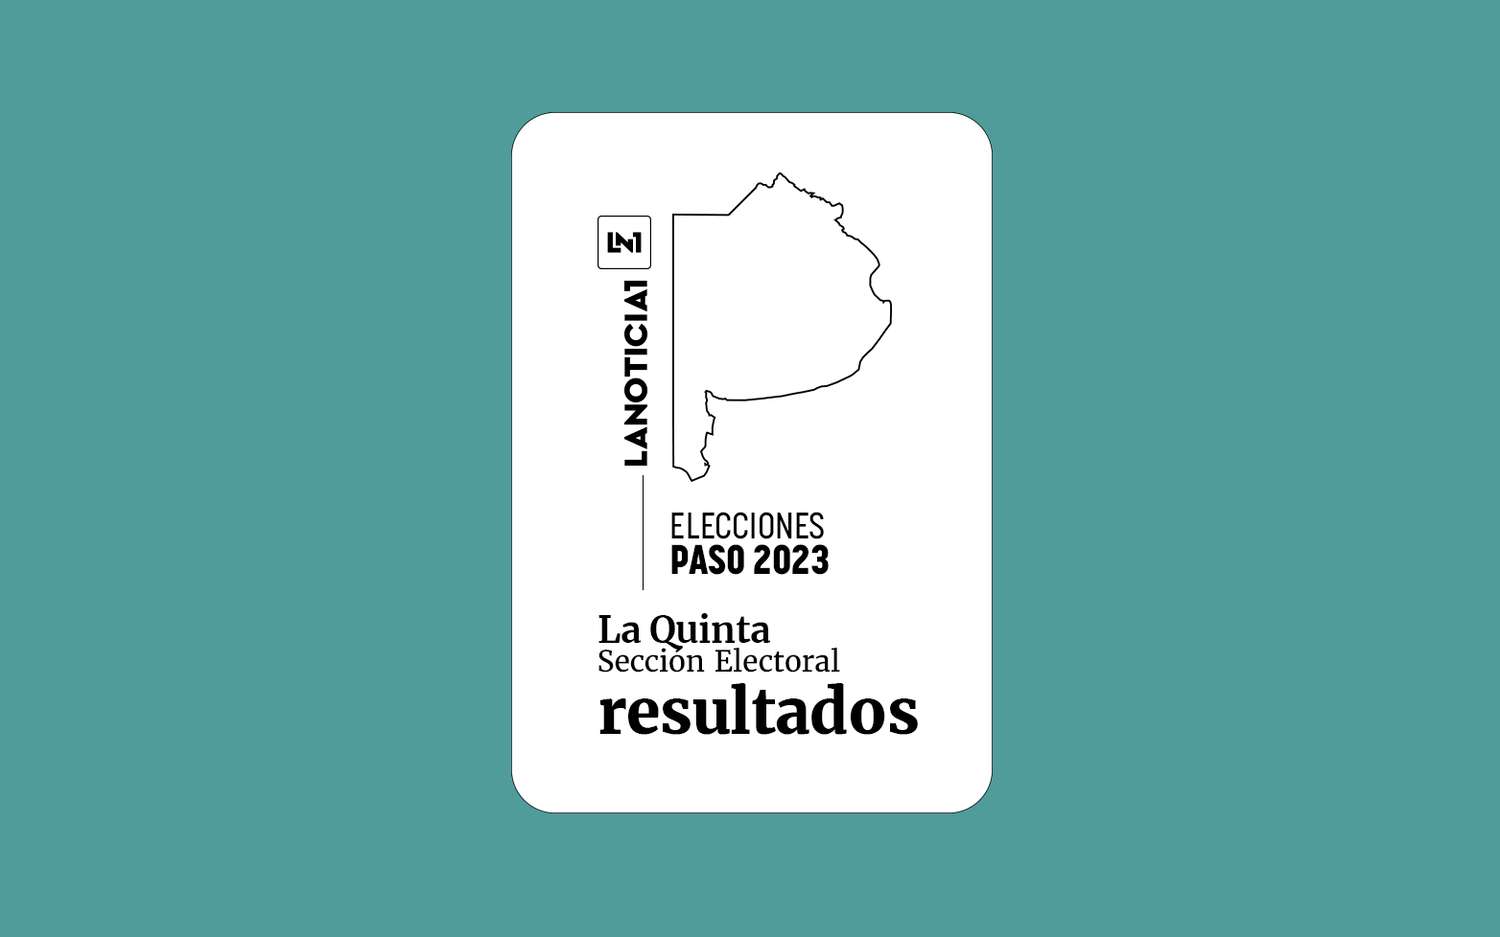 Elecciones PASO 2023: Resultados oficiales en la Quinta Sección Electoral